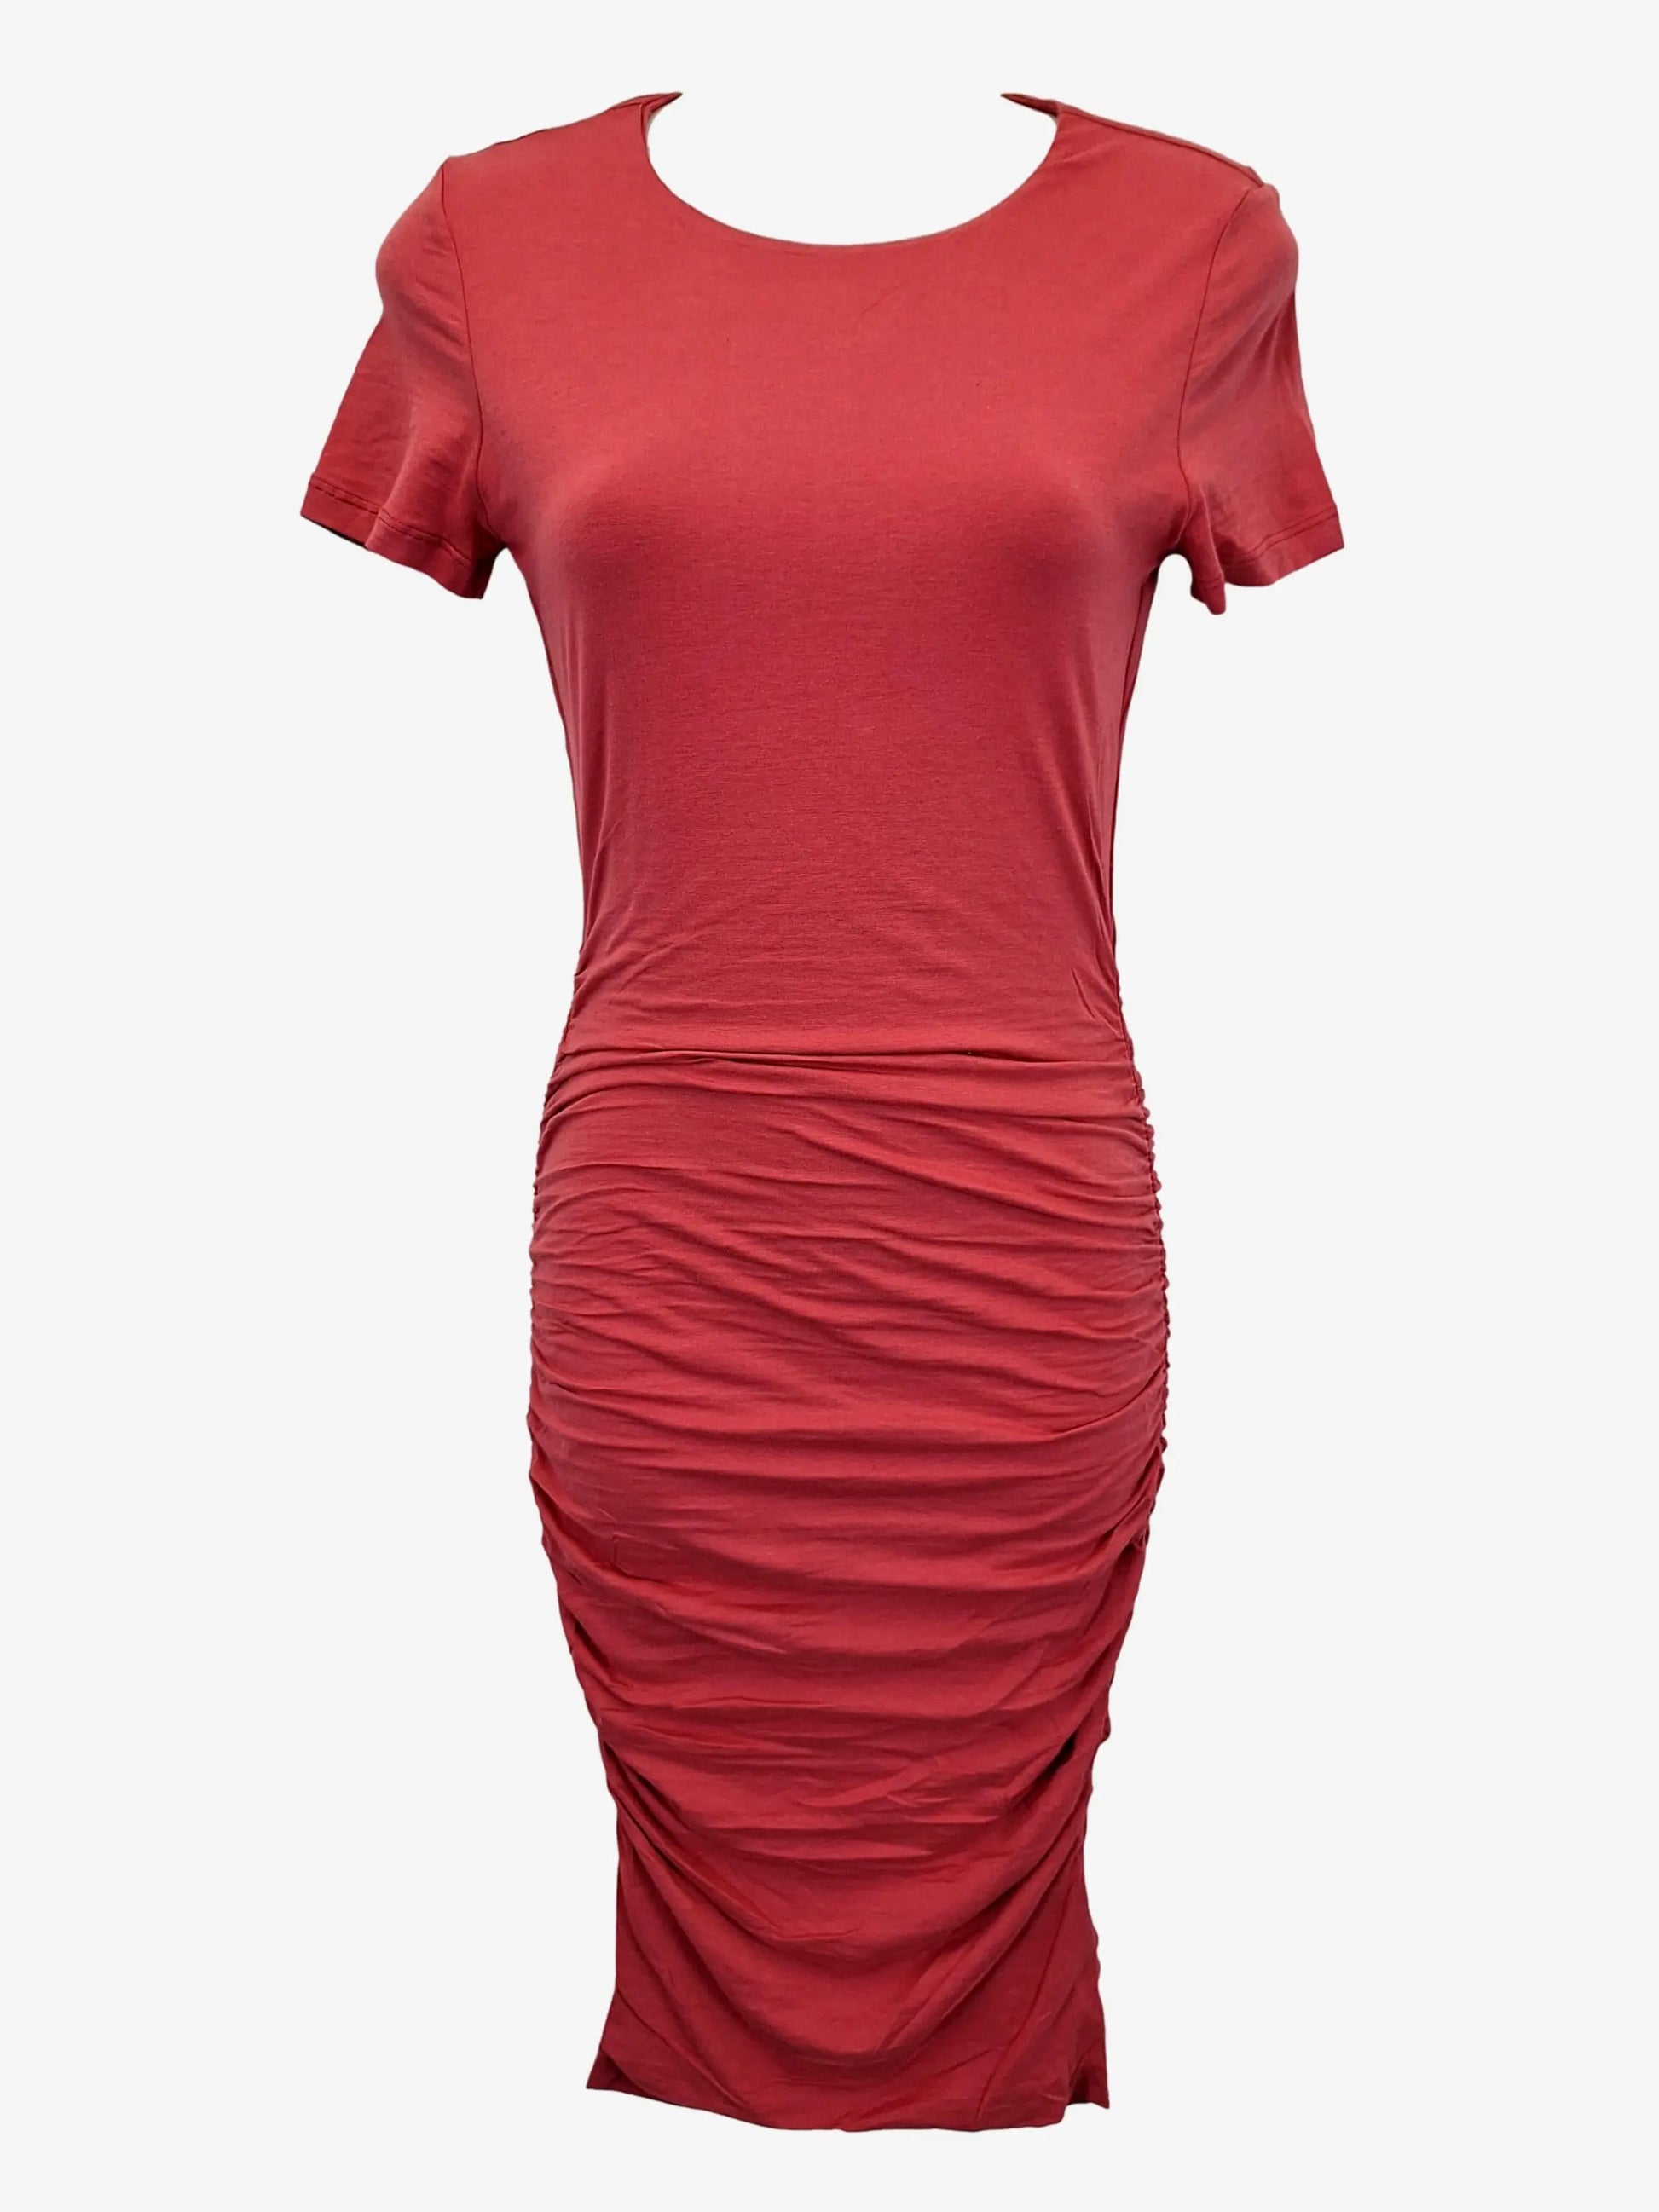 Kookai - Red Kookai Top on Designer Wardrobe